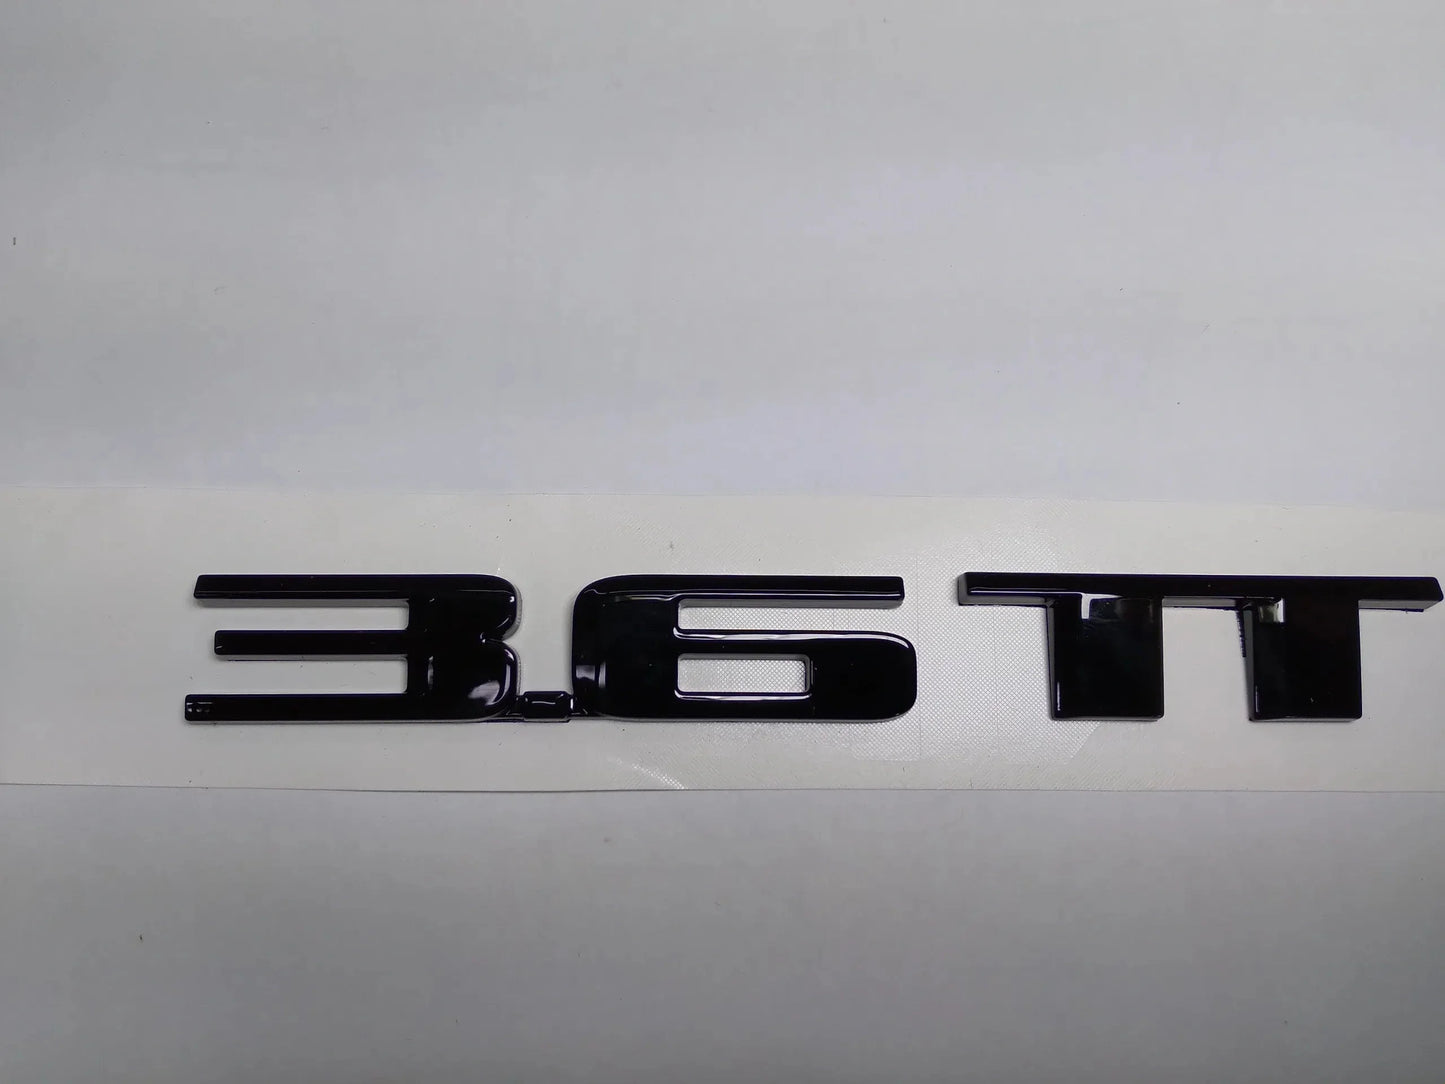 2014-'19 CTS "3.6TT" Gloss Black Letter Badging